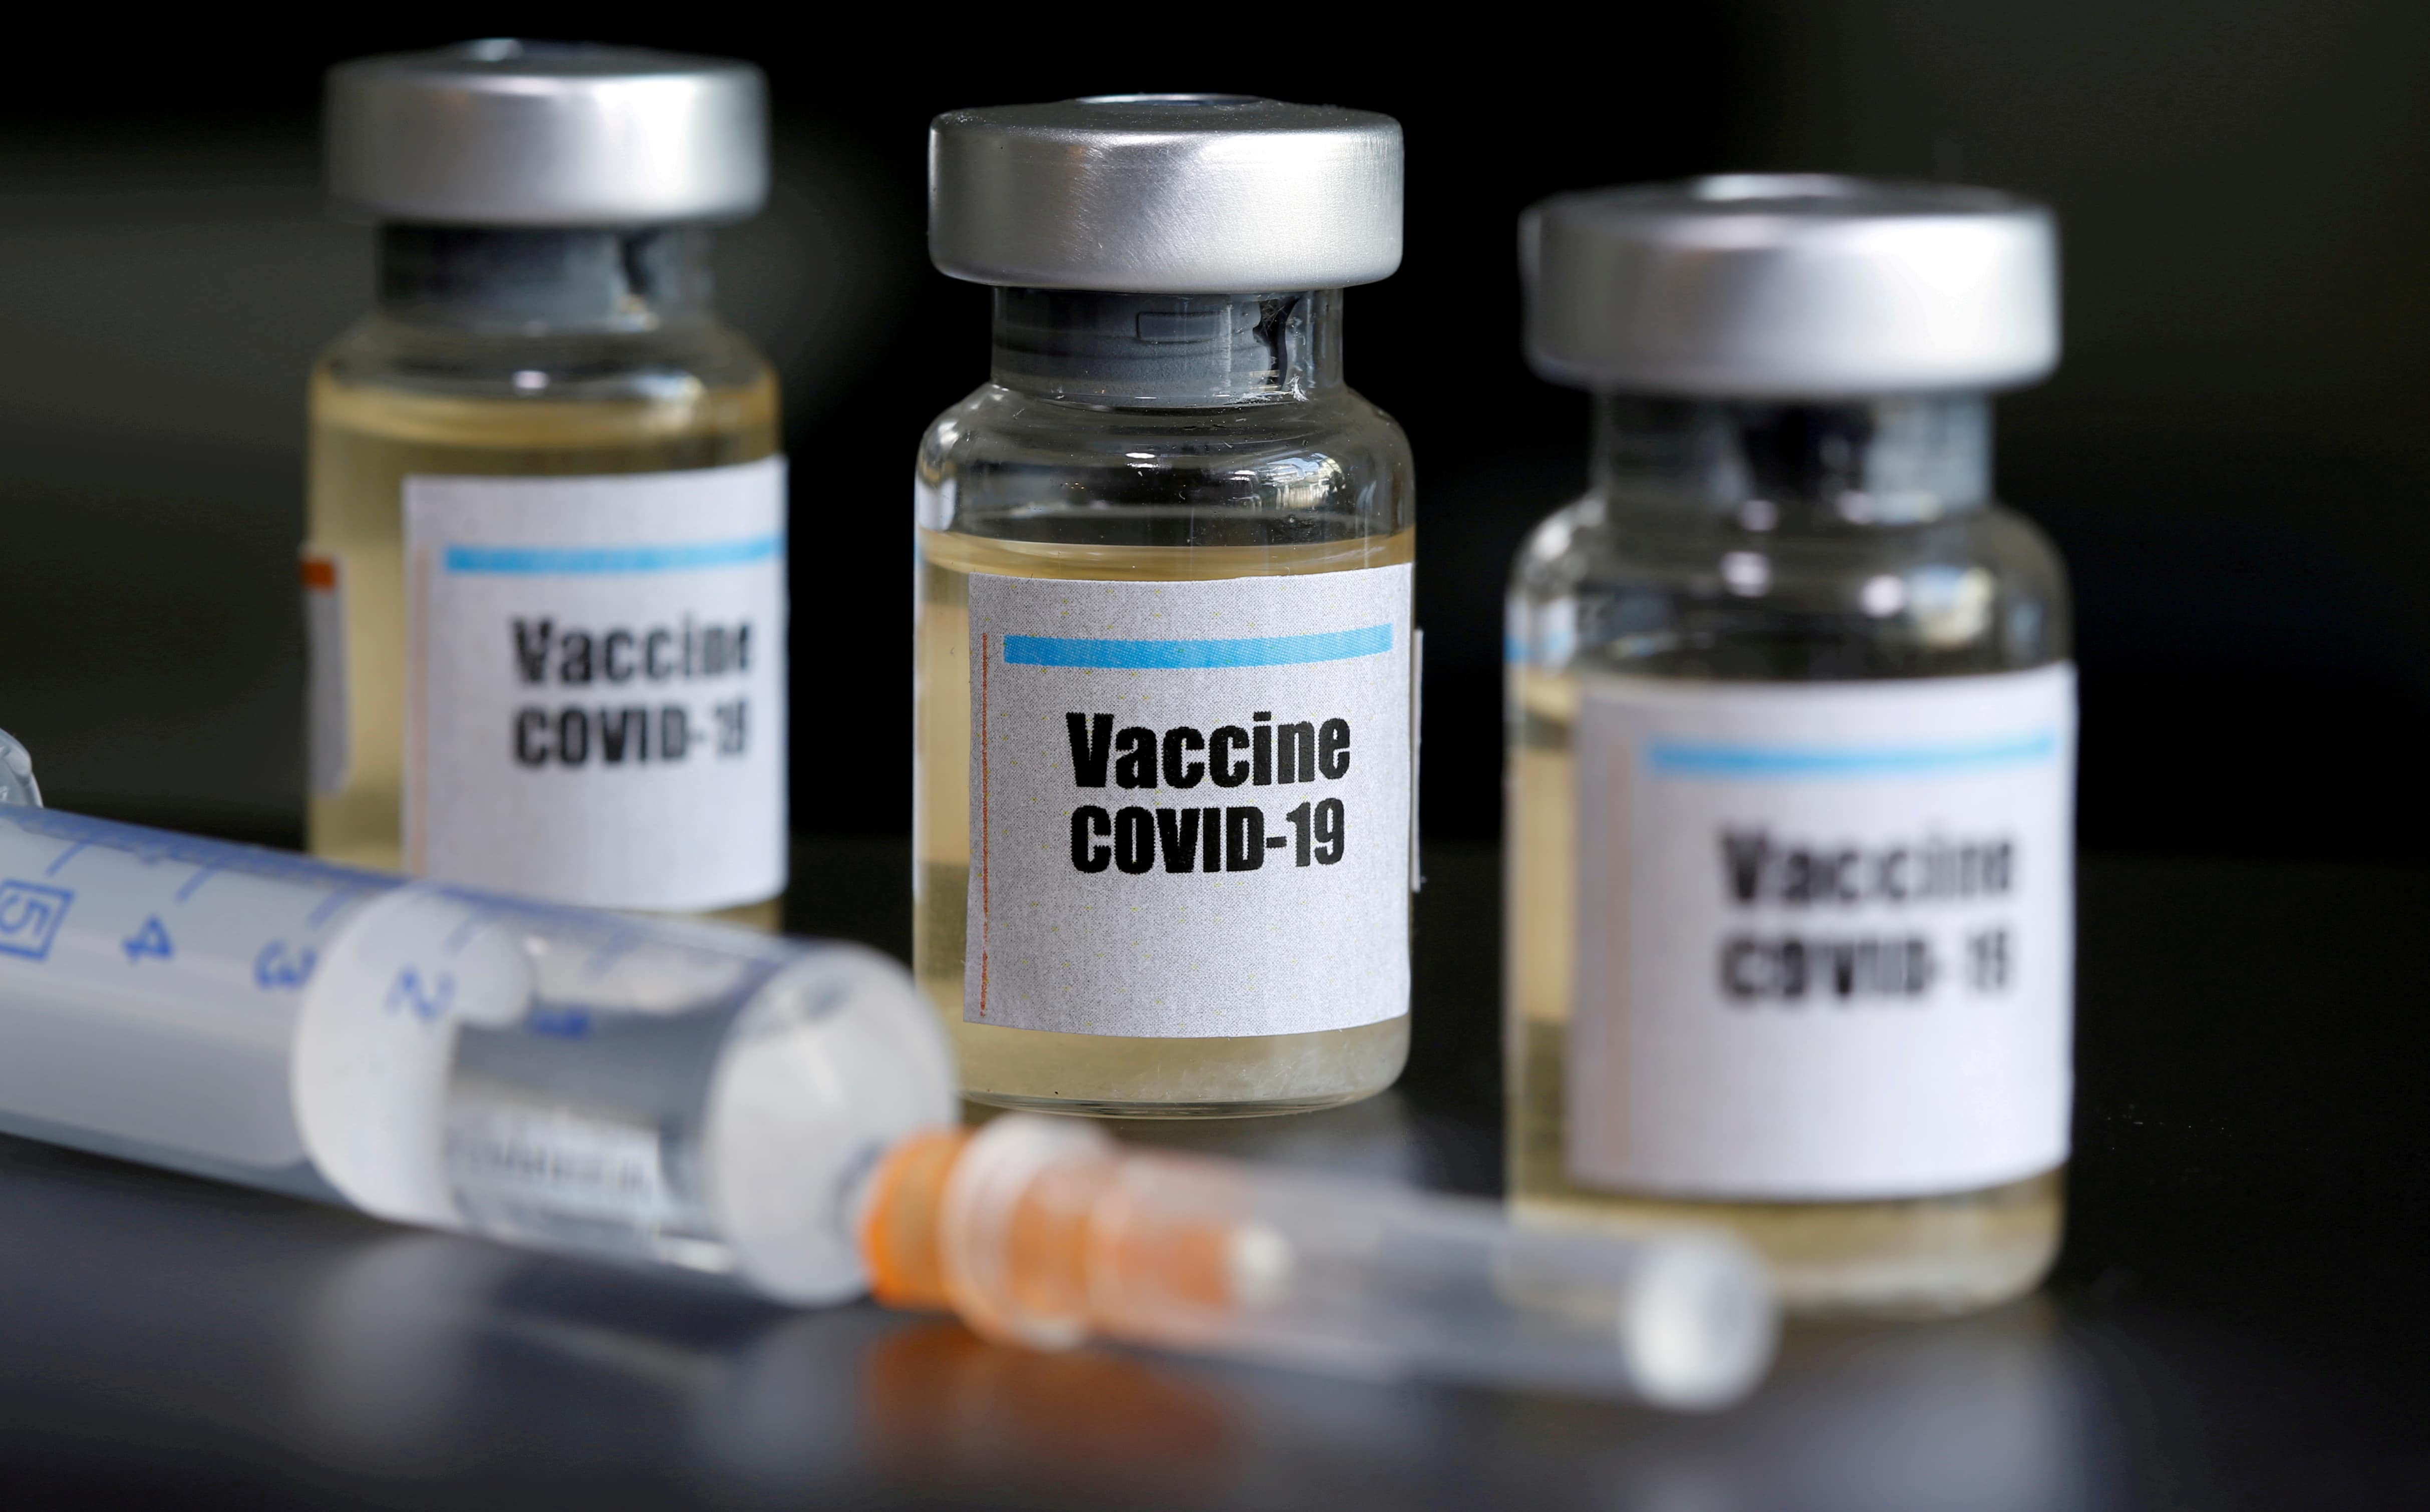 Vacina Sars Covid 2